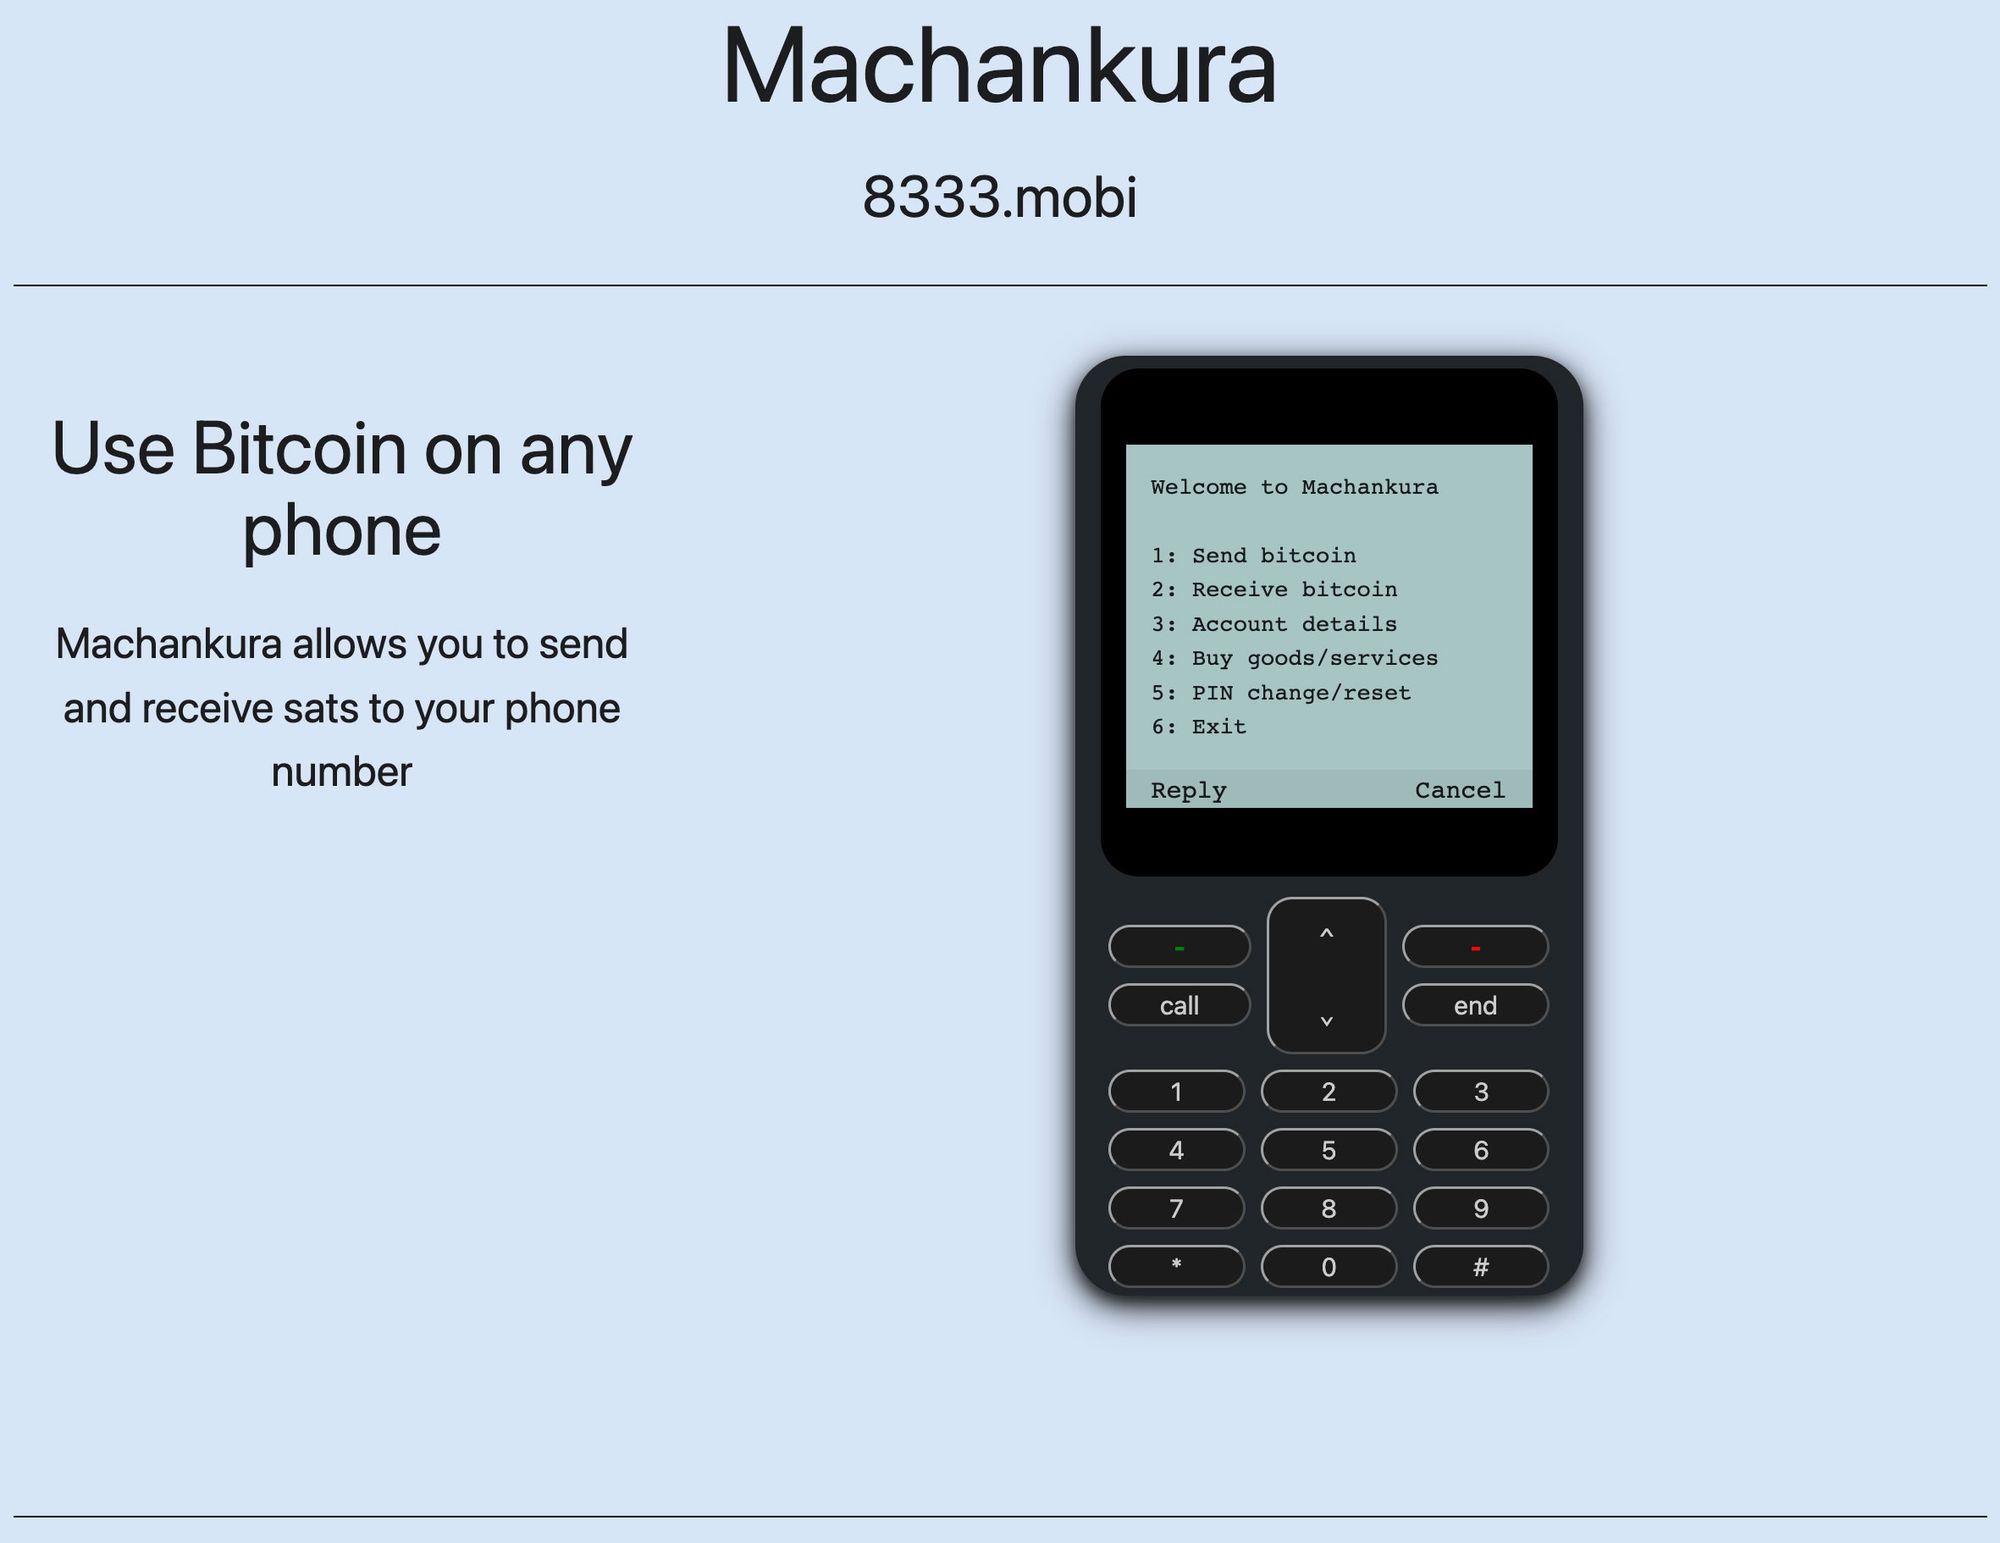 Machankura's “mobile money” bitcoin service